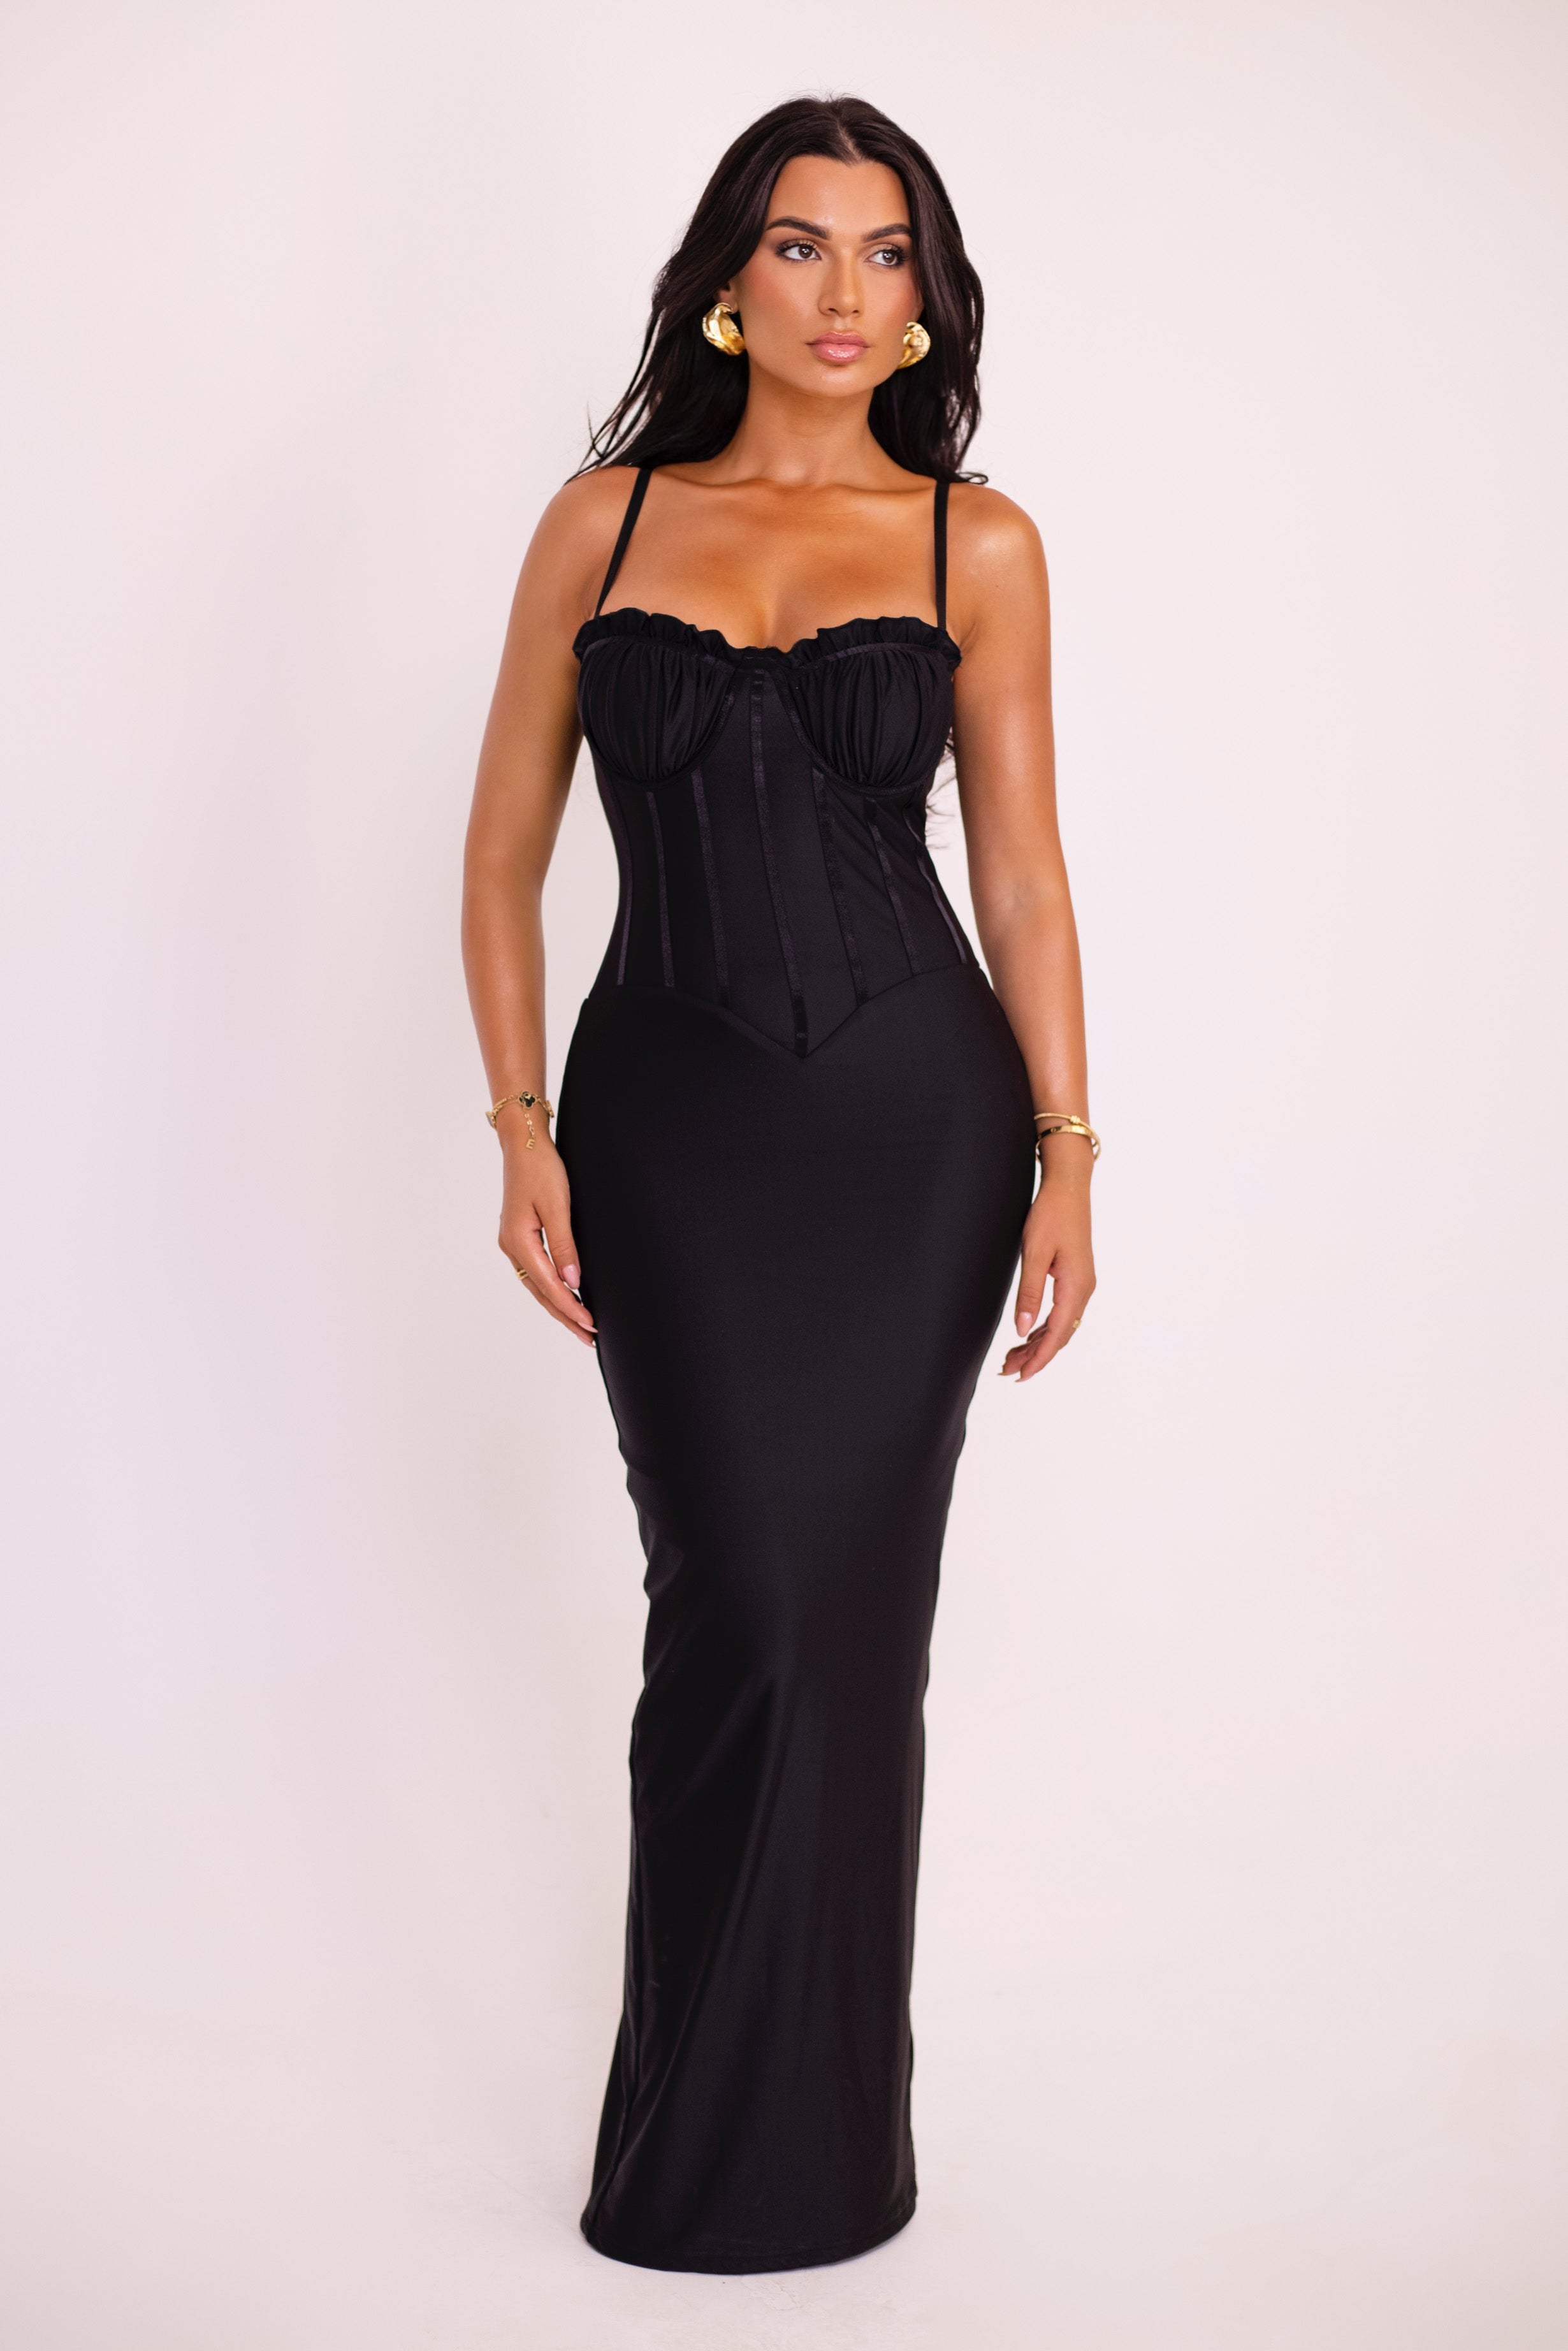 Ledia Black Dress